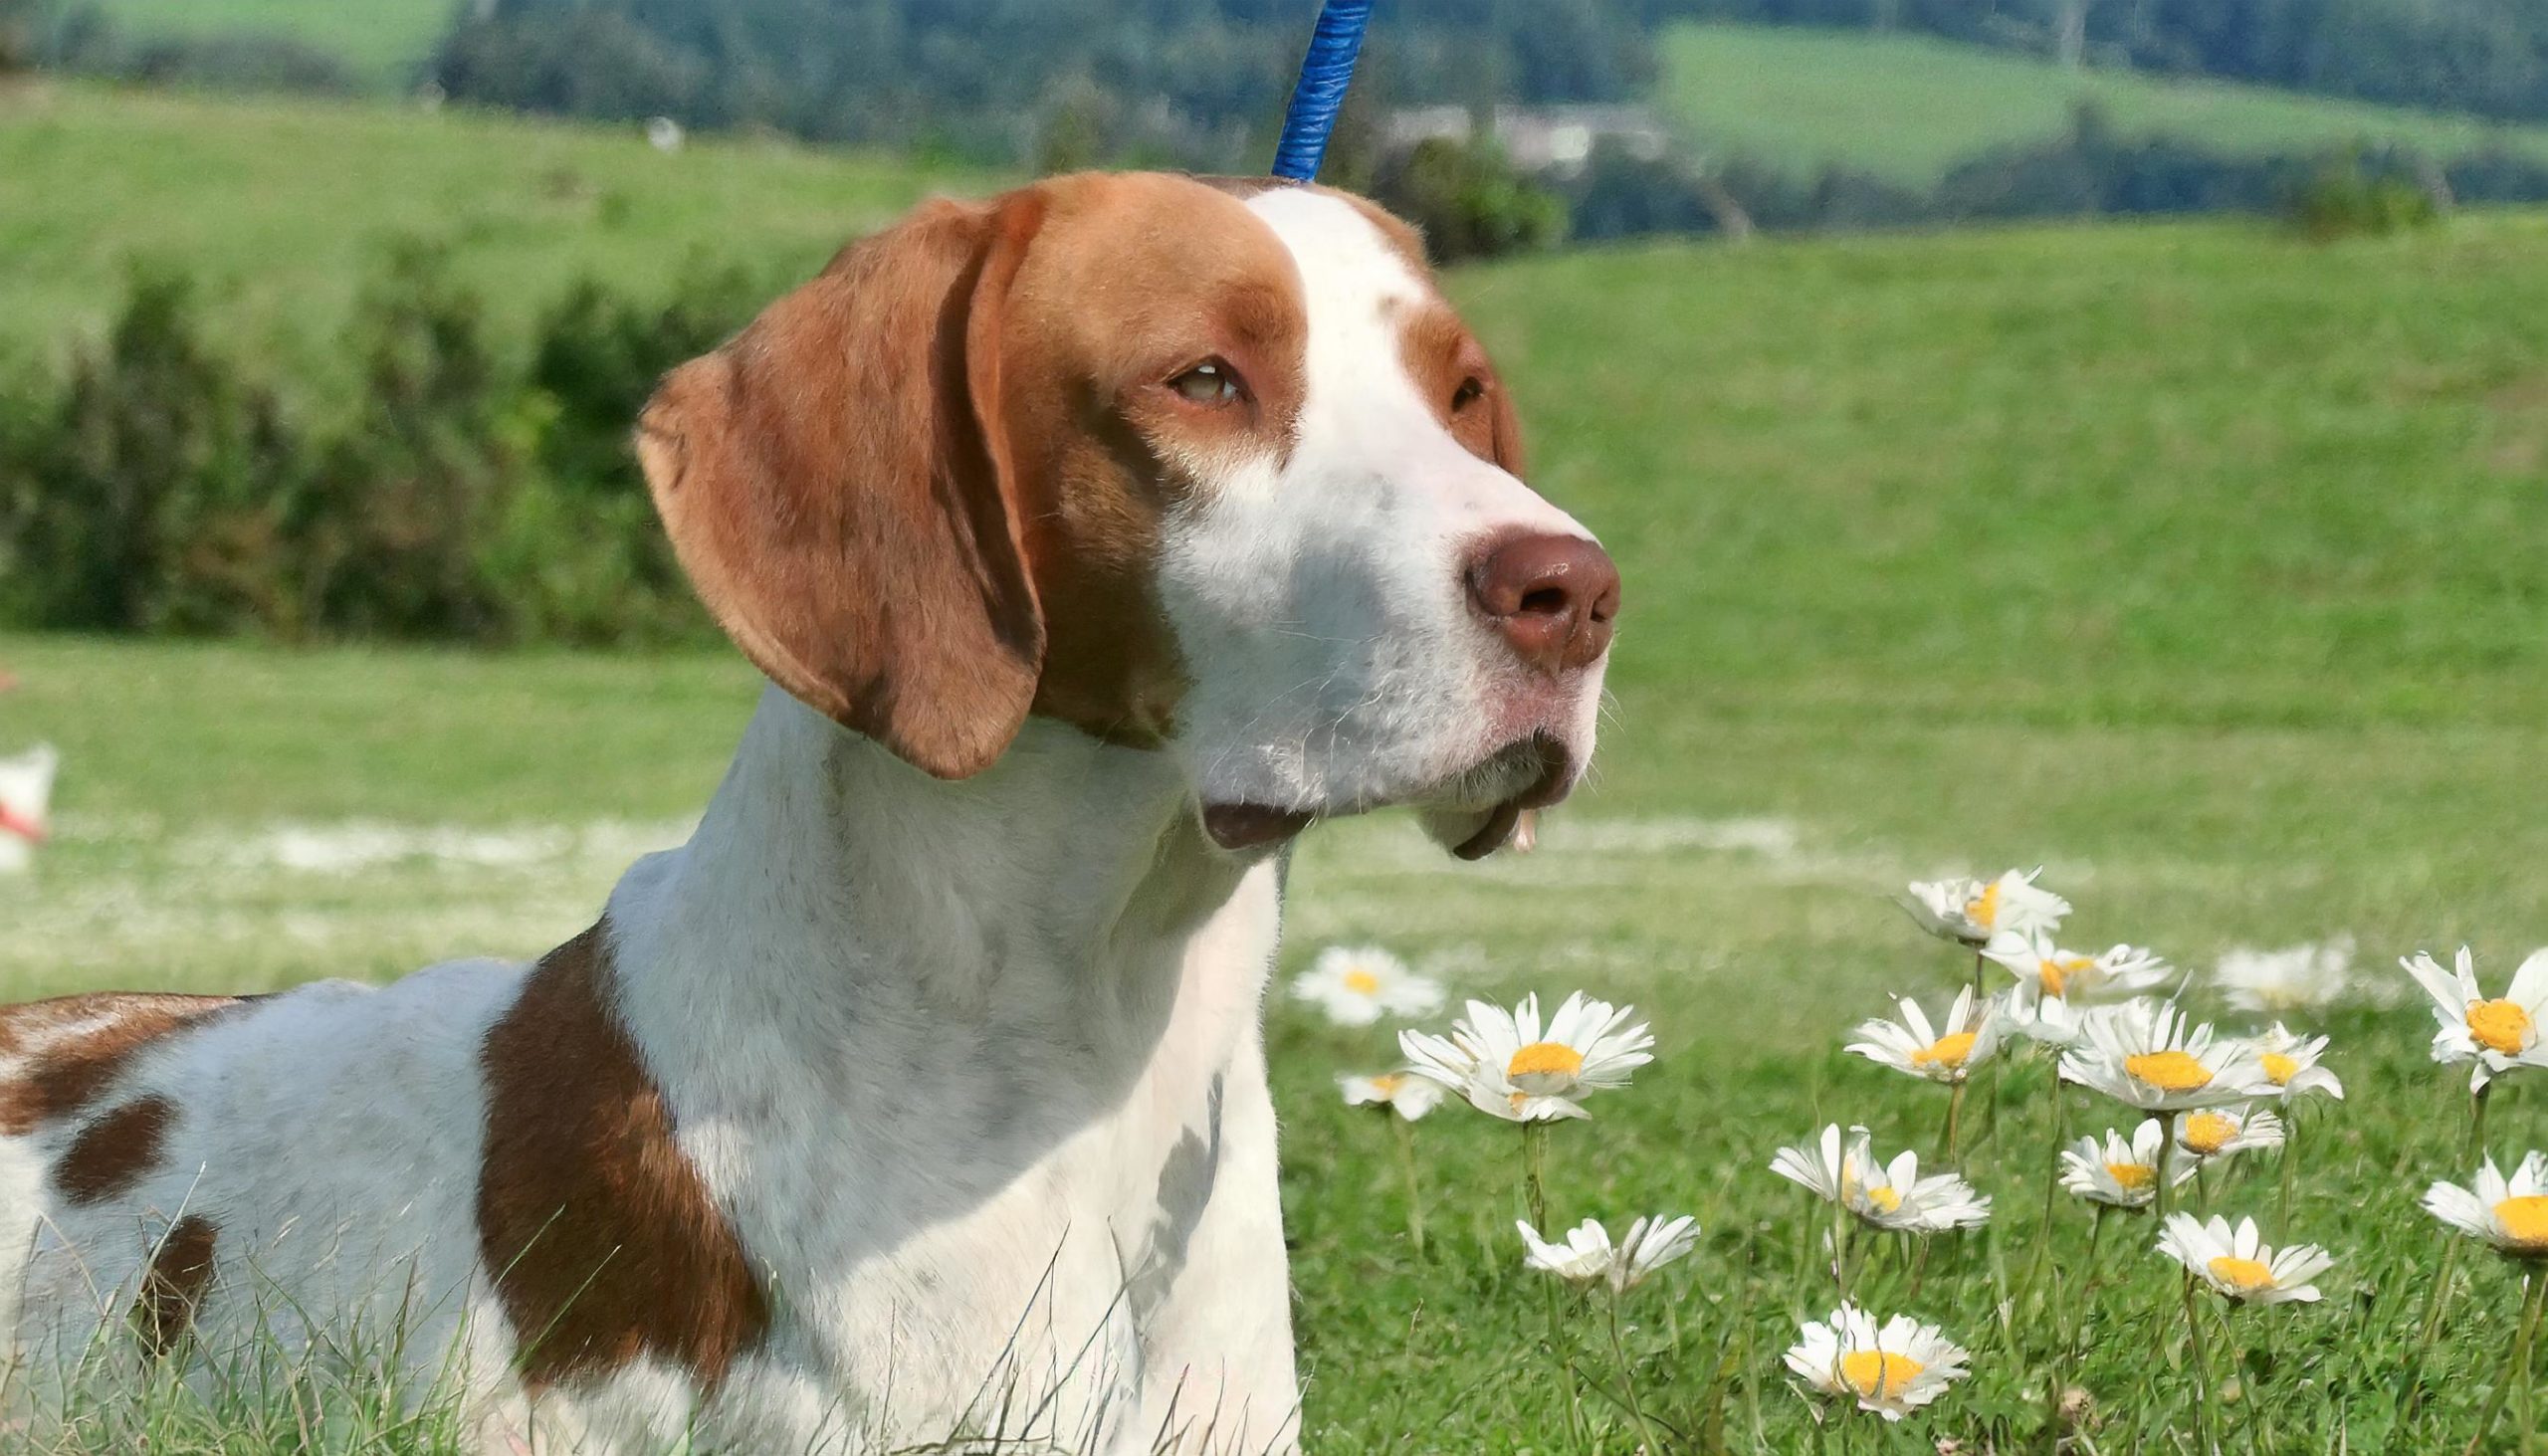 De Braque Saint-Germain is een jachthond van Franse origine die valt onder de klasse van de staande honden. Het ras is sterk verwant aan de pointer. Deze betrekkelijk zeldzame hond kent slechts één kleurpatroon, wit met oranje platen, en heeft een roze neus.